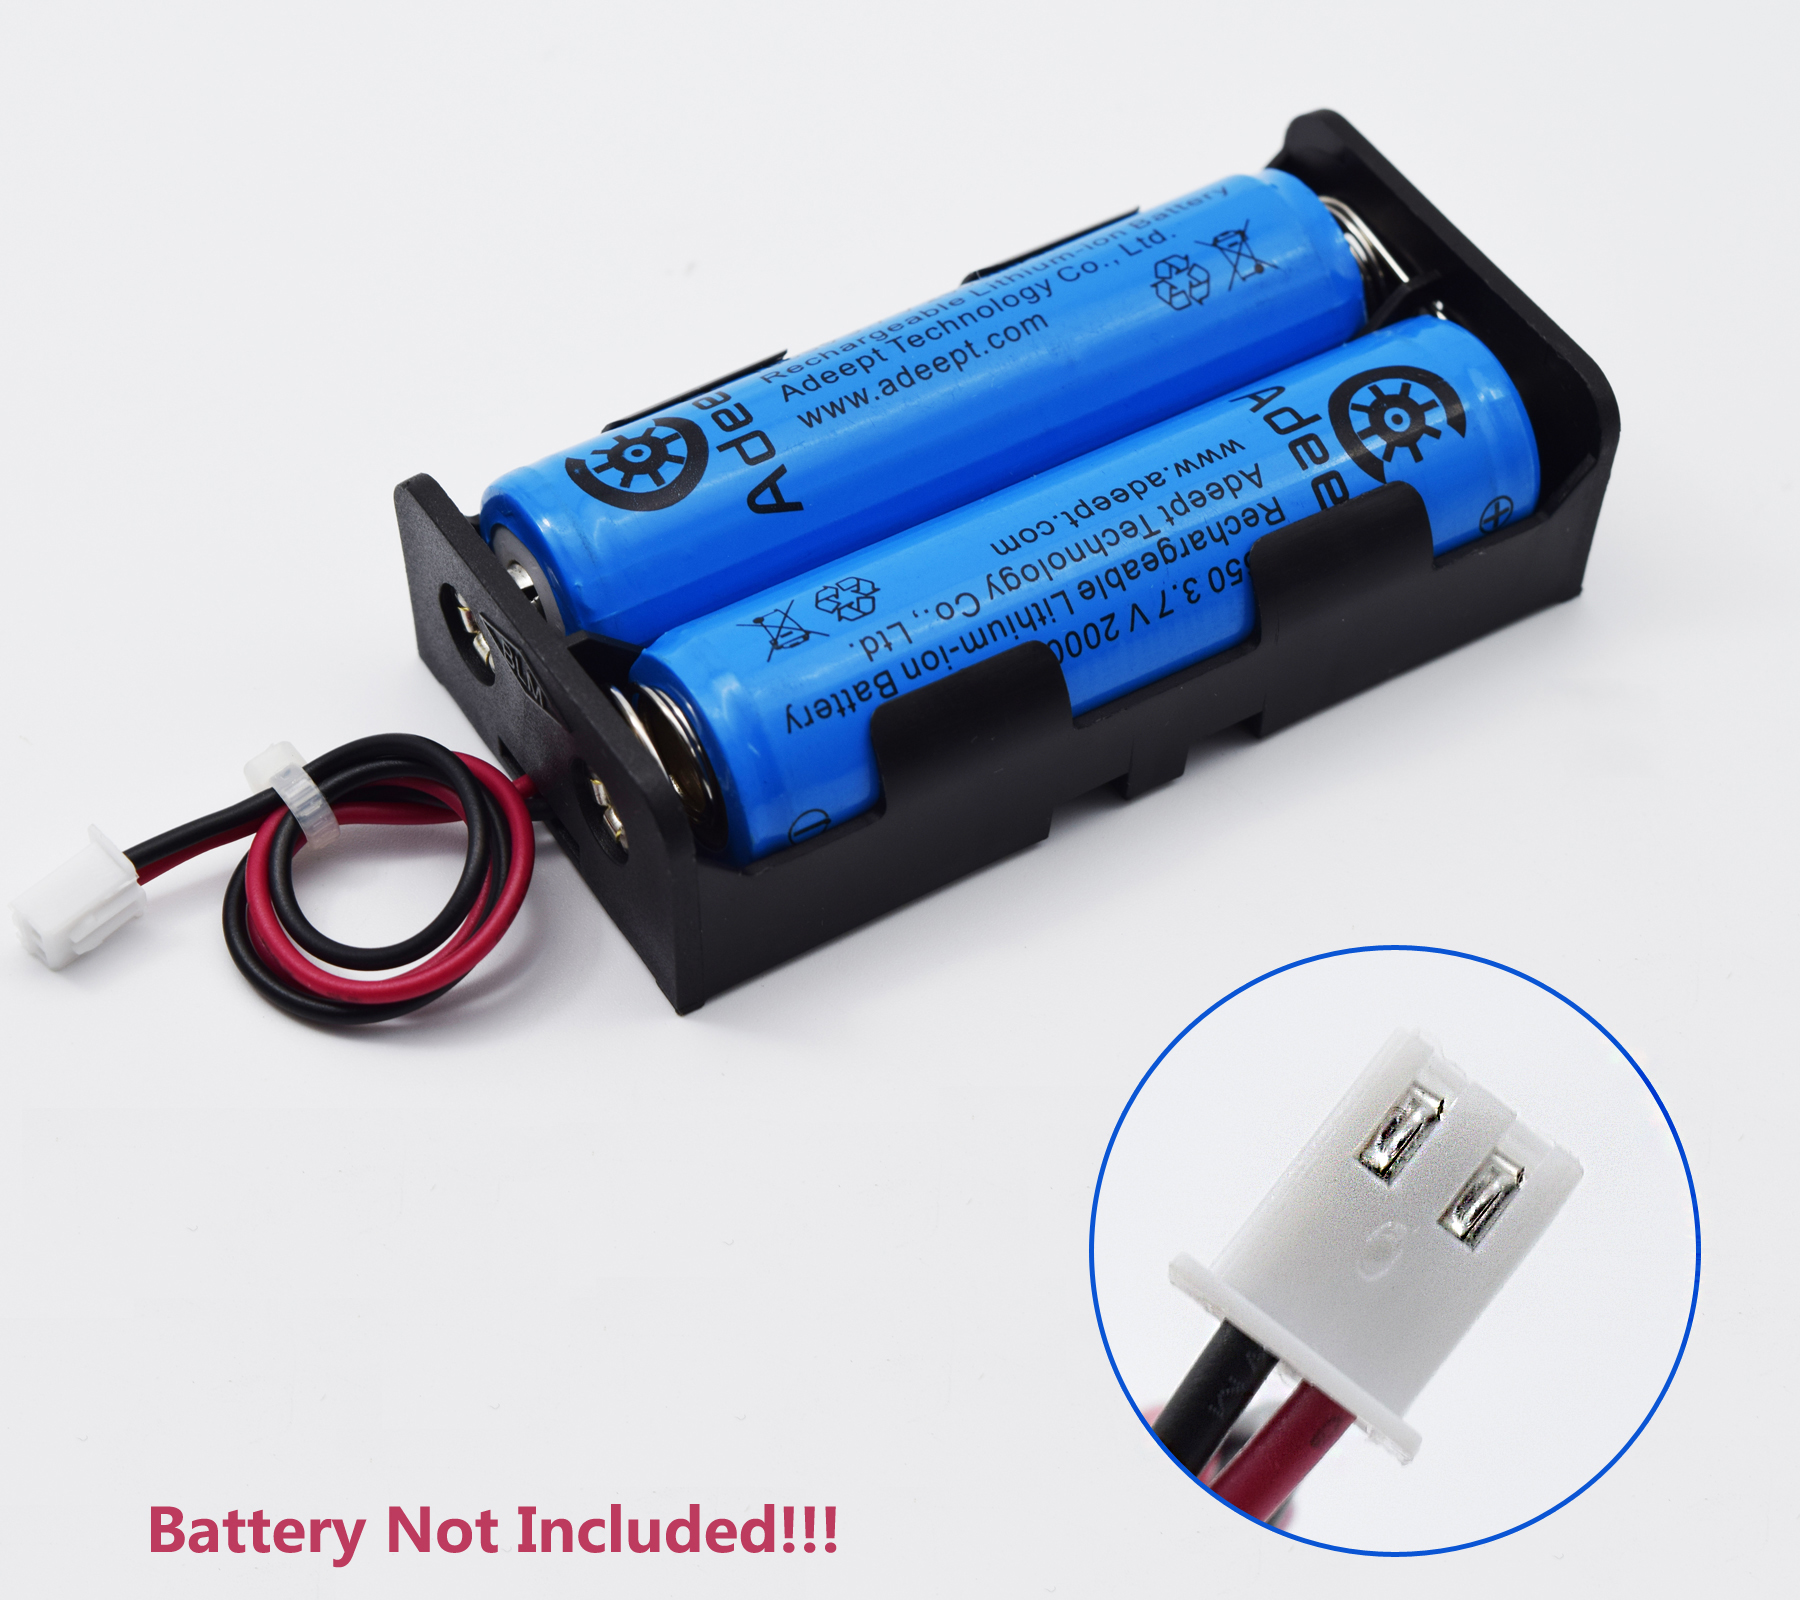 Batterie rechargeable 18650 Batterie au lithium 3.7V Algeria